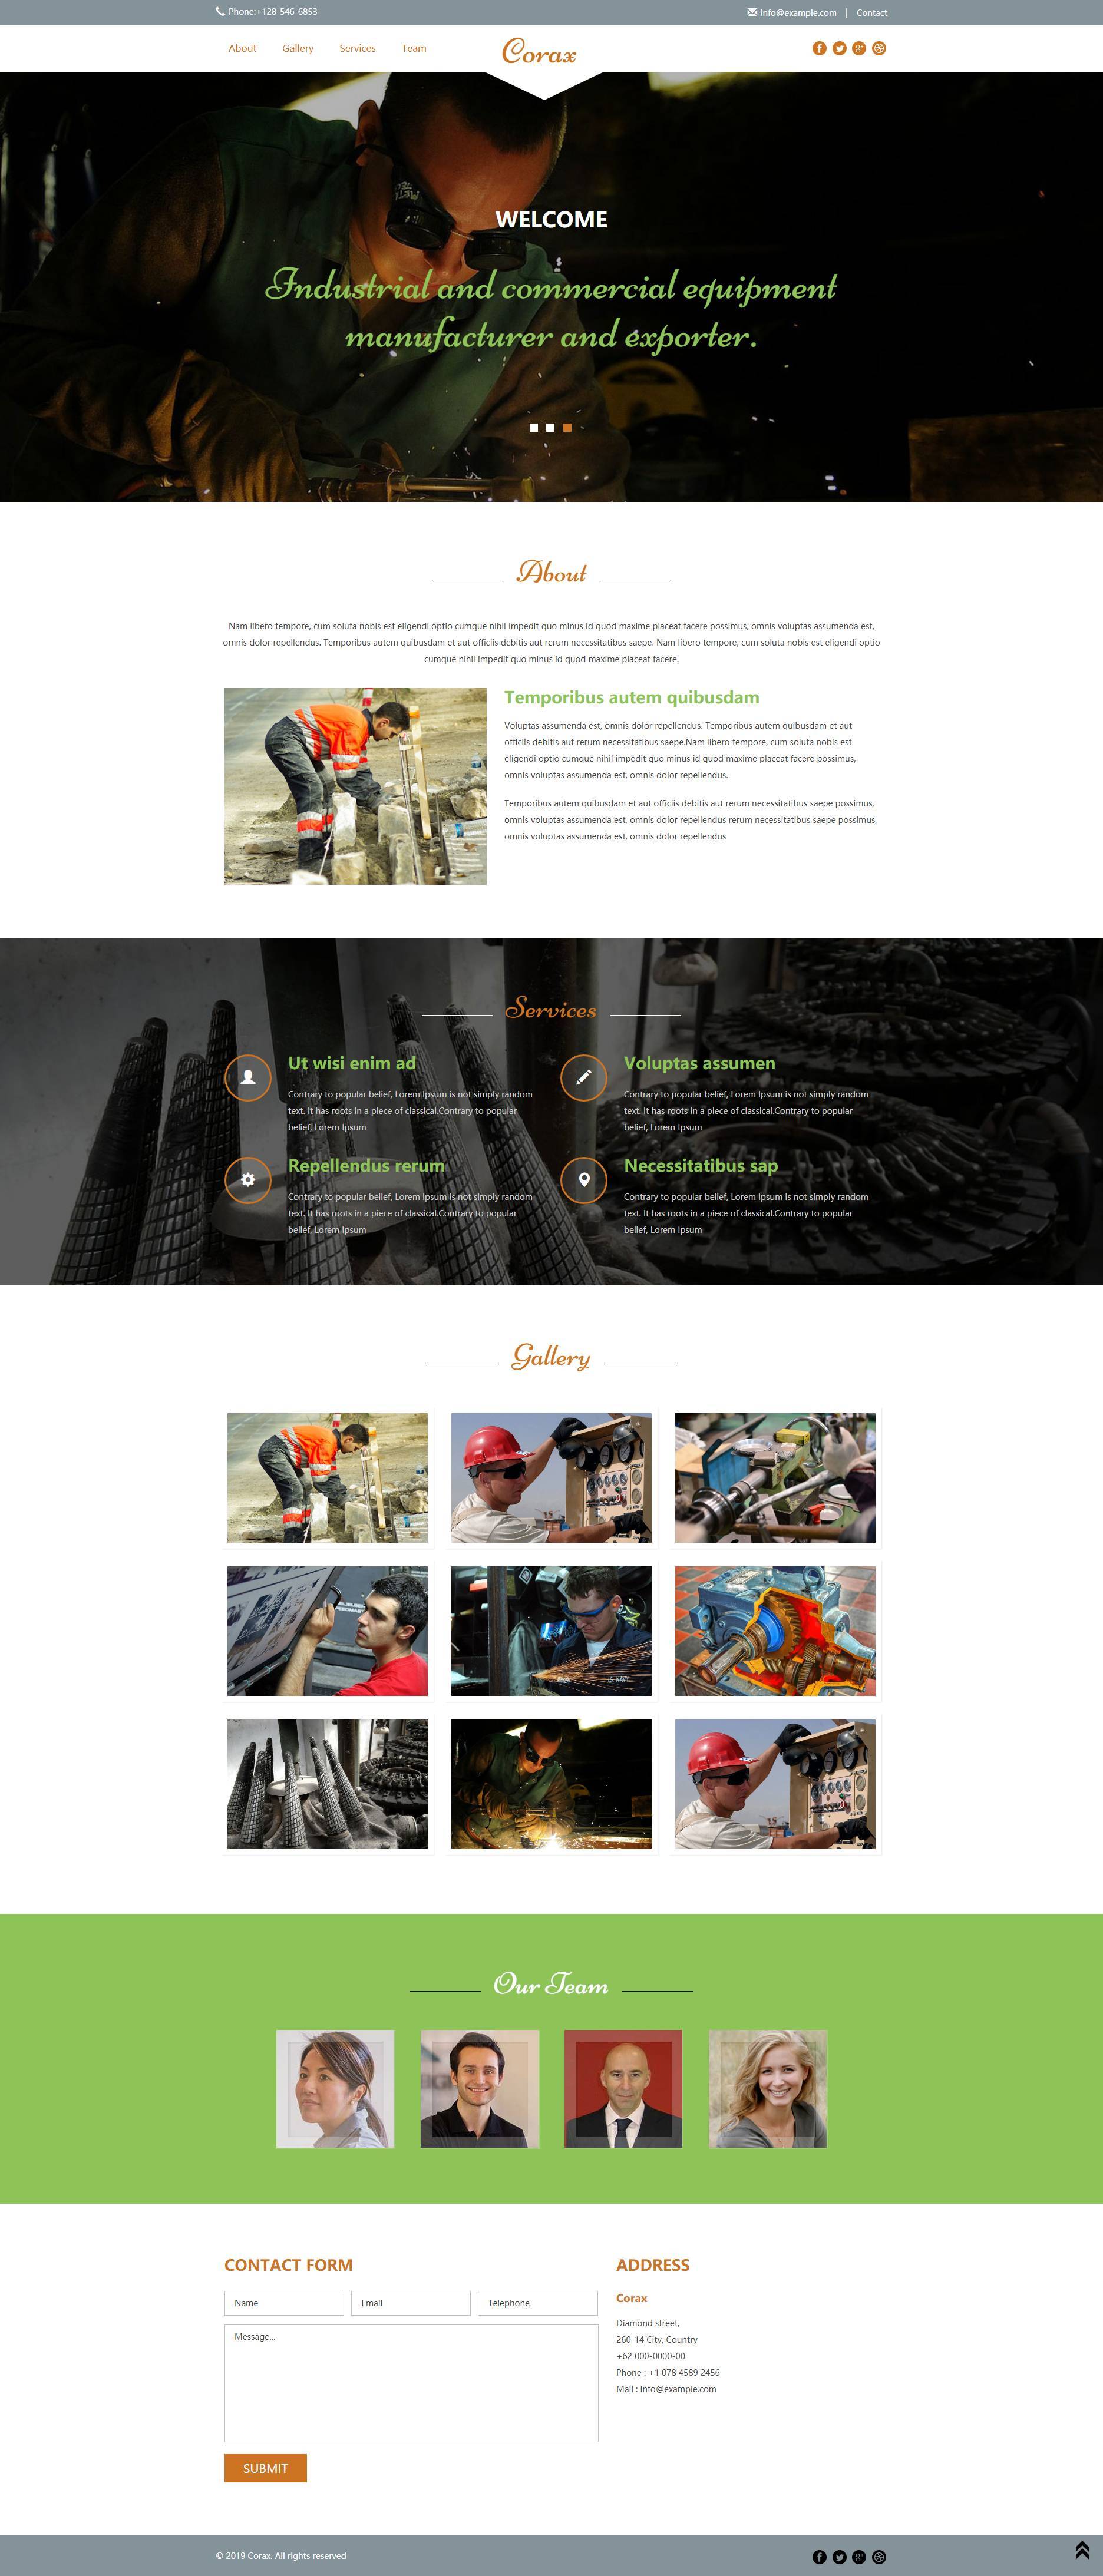 工业和商业设备制造商展示型网站模板